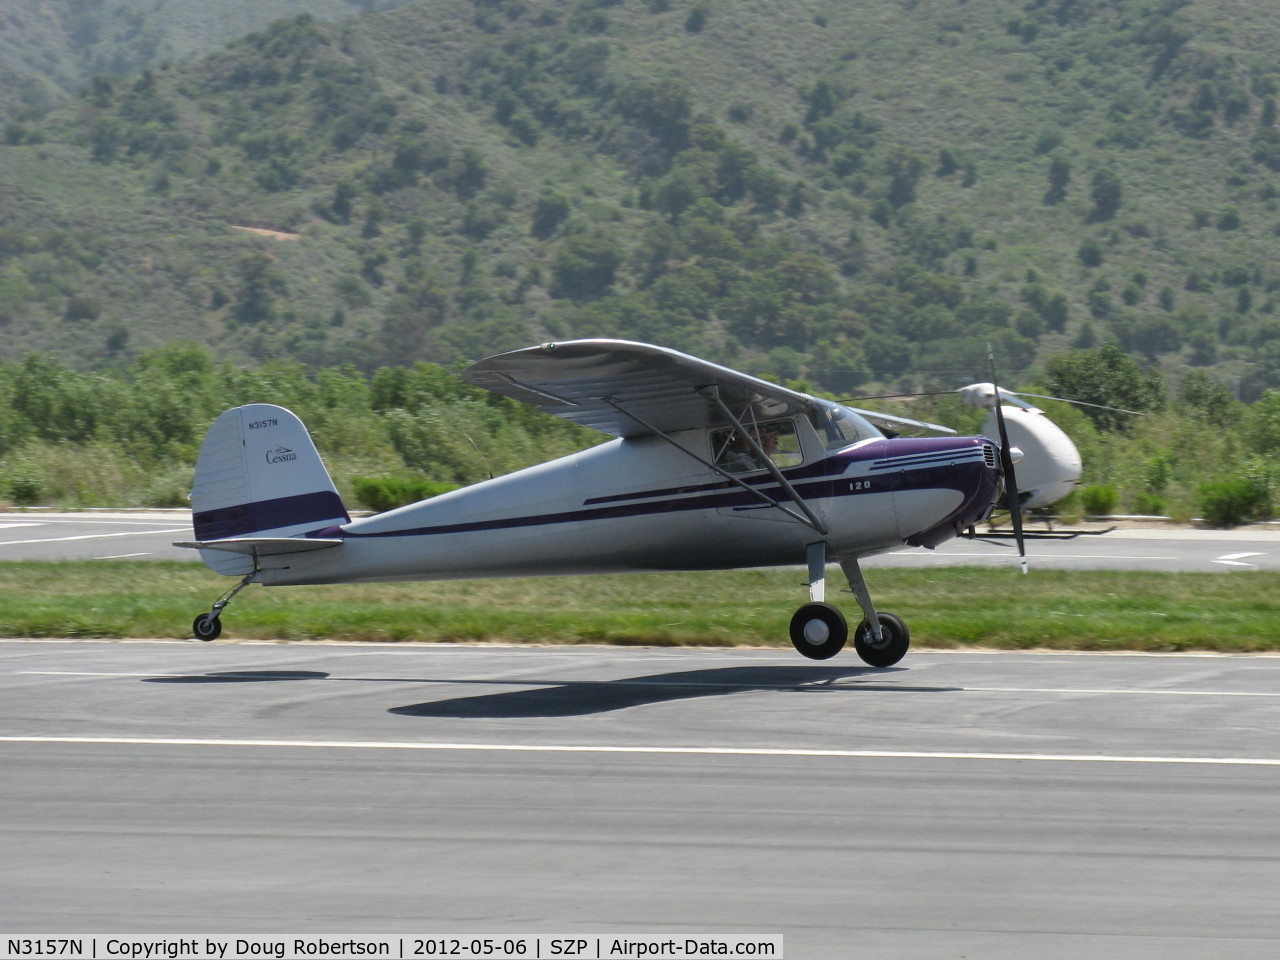 N3157N, 1947 Cessna 120 C/N 13415, 1947 Cessna 120, Continental C85 85 Hp, touchdown Rwy 22